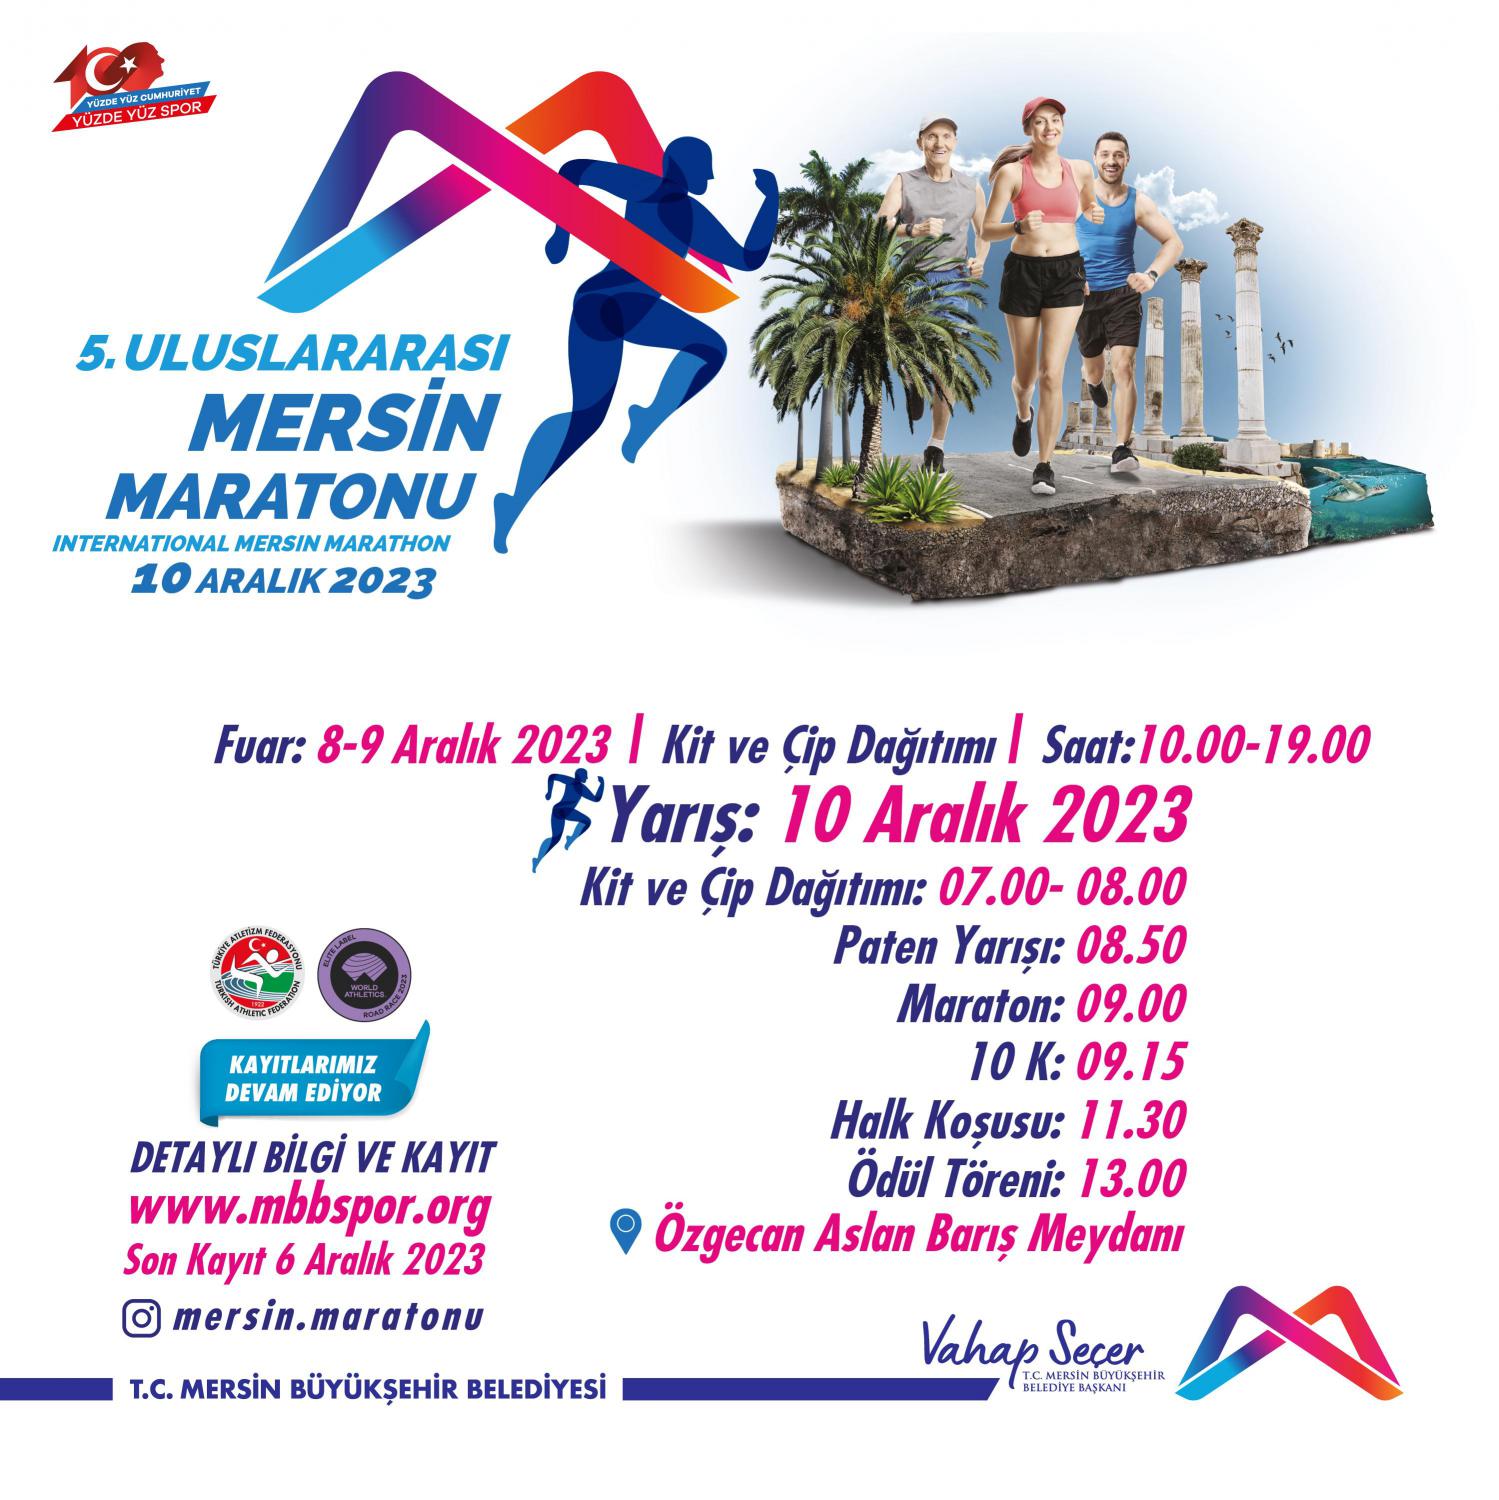 5. Uluslararası Mersin Maratonu başlıyor!